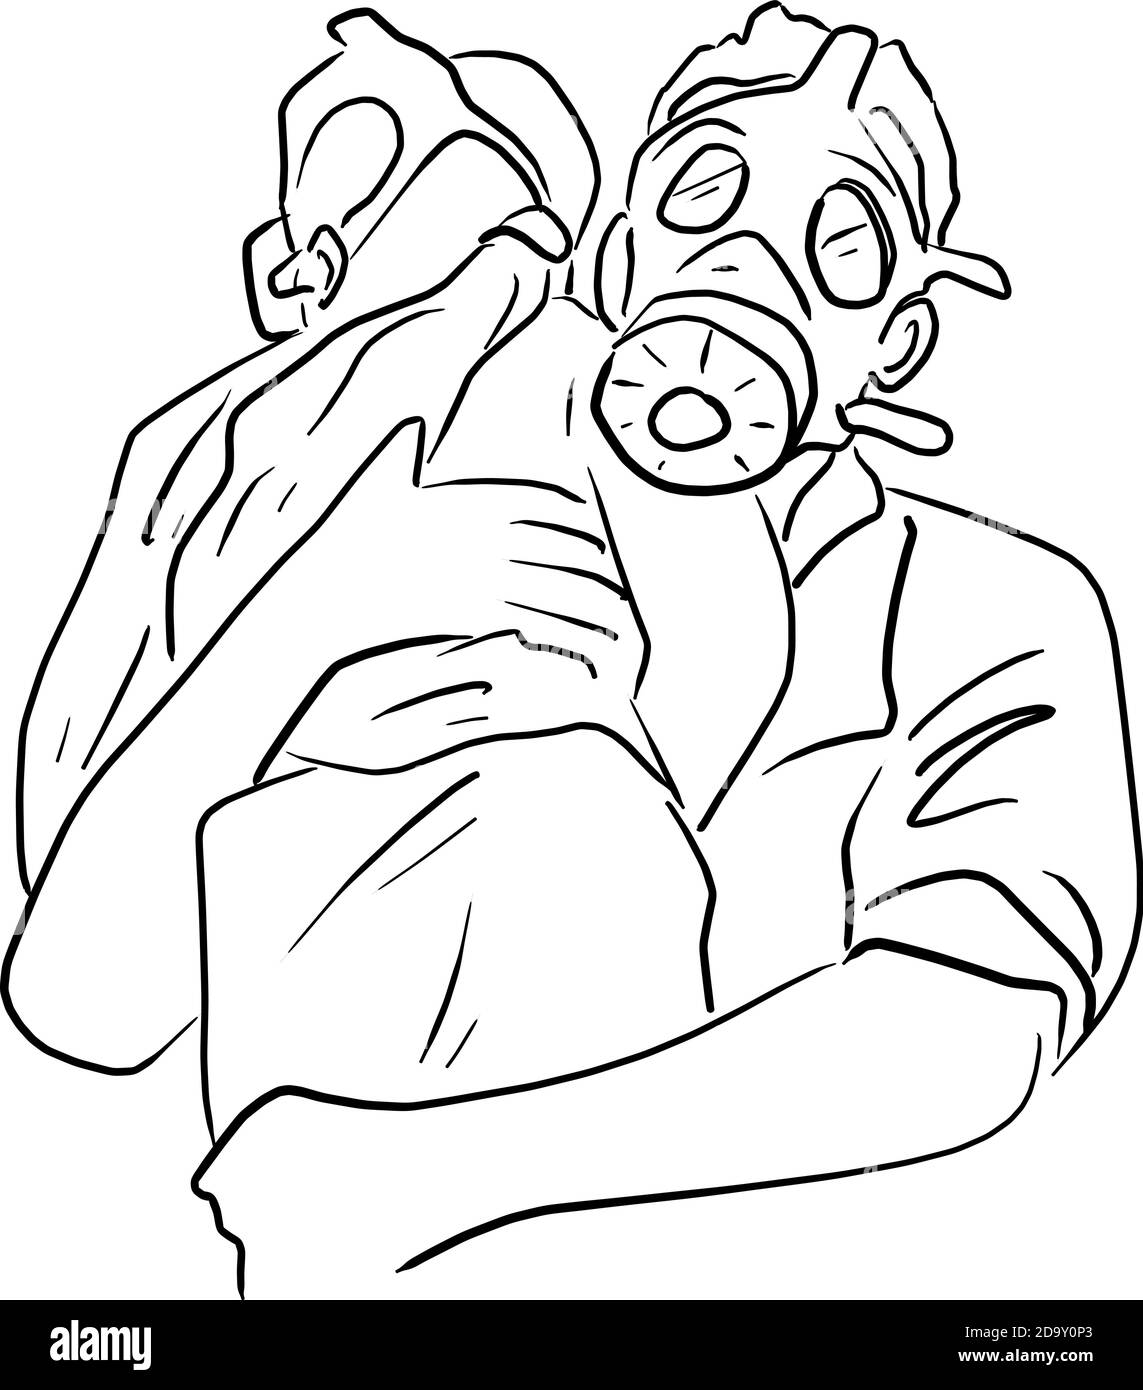 maschera antigas o respiratore verde militare per la protezione contro armi  chimiche, gas velenosi con filtri a carbone. 5459870 Arte vettoriale a  Vecteezy